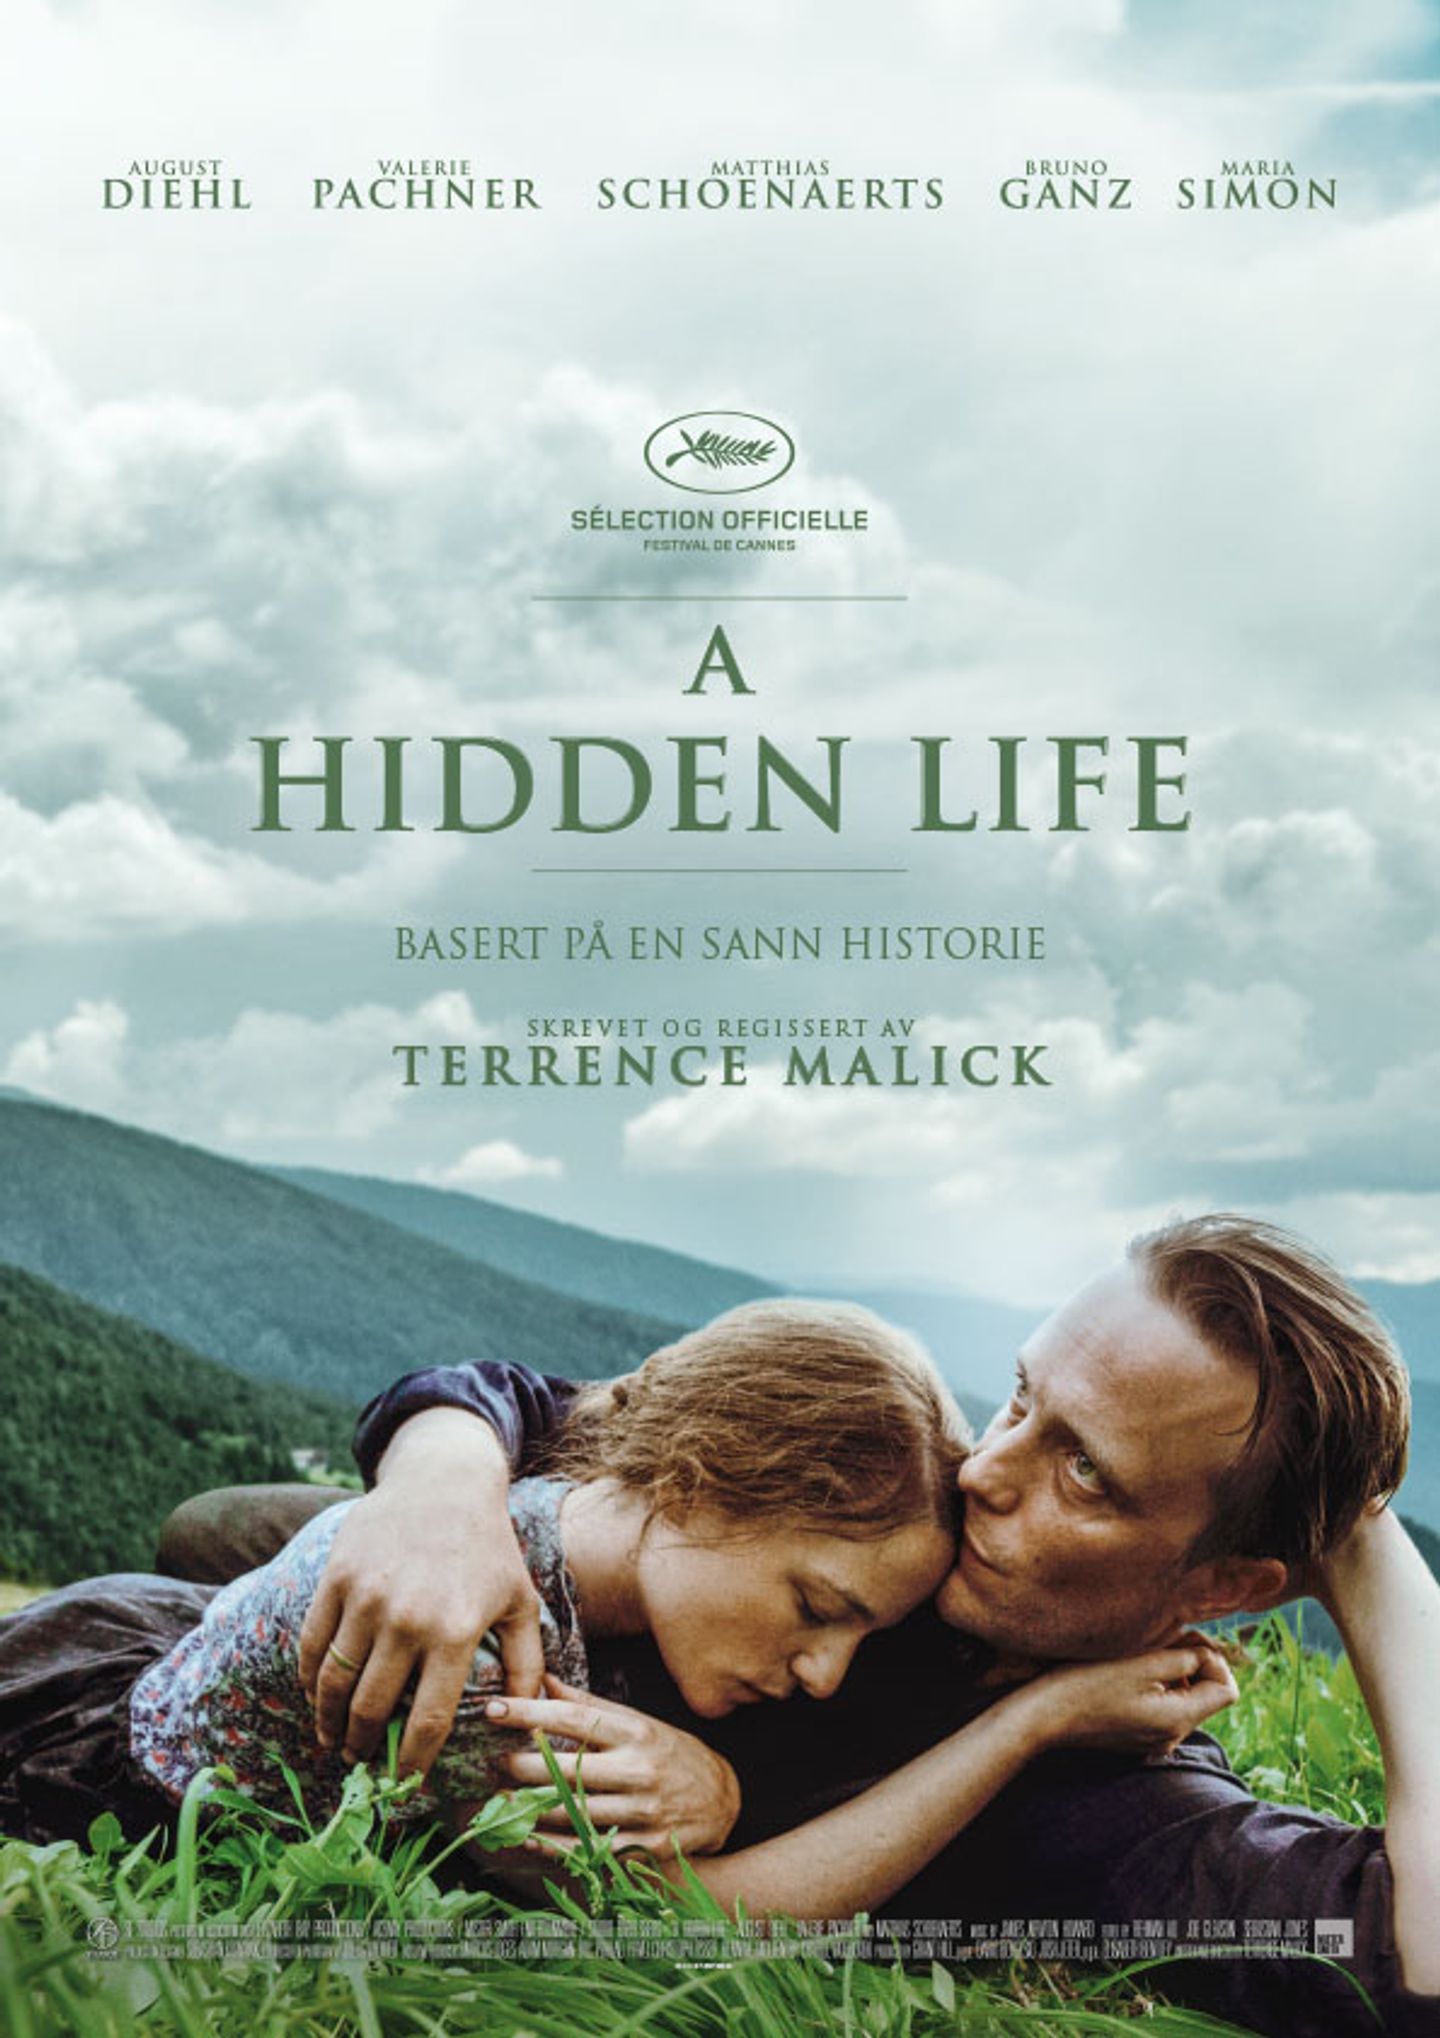 Plakat for 'A Hidden Life'